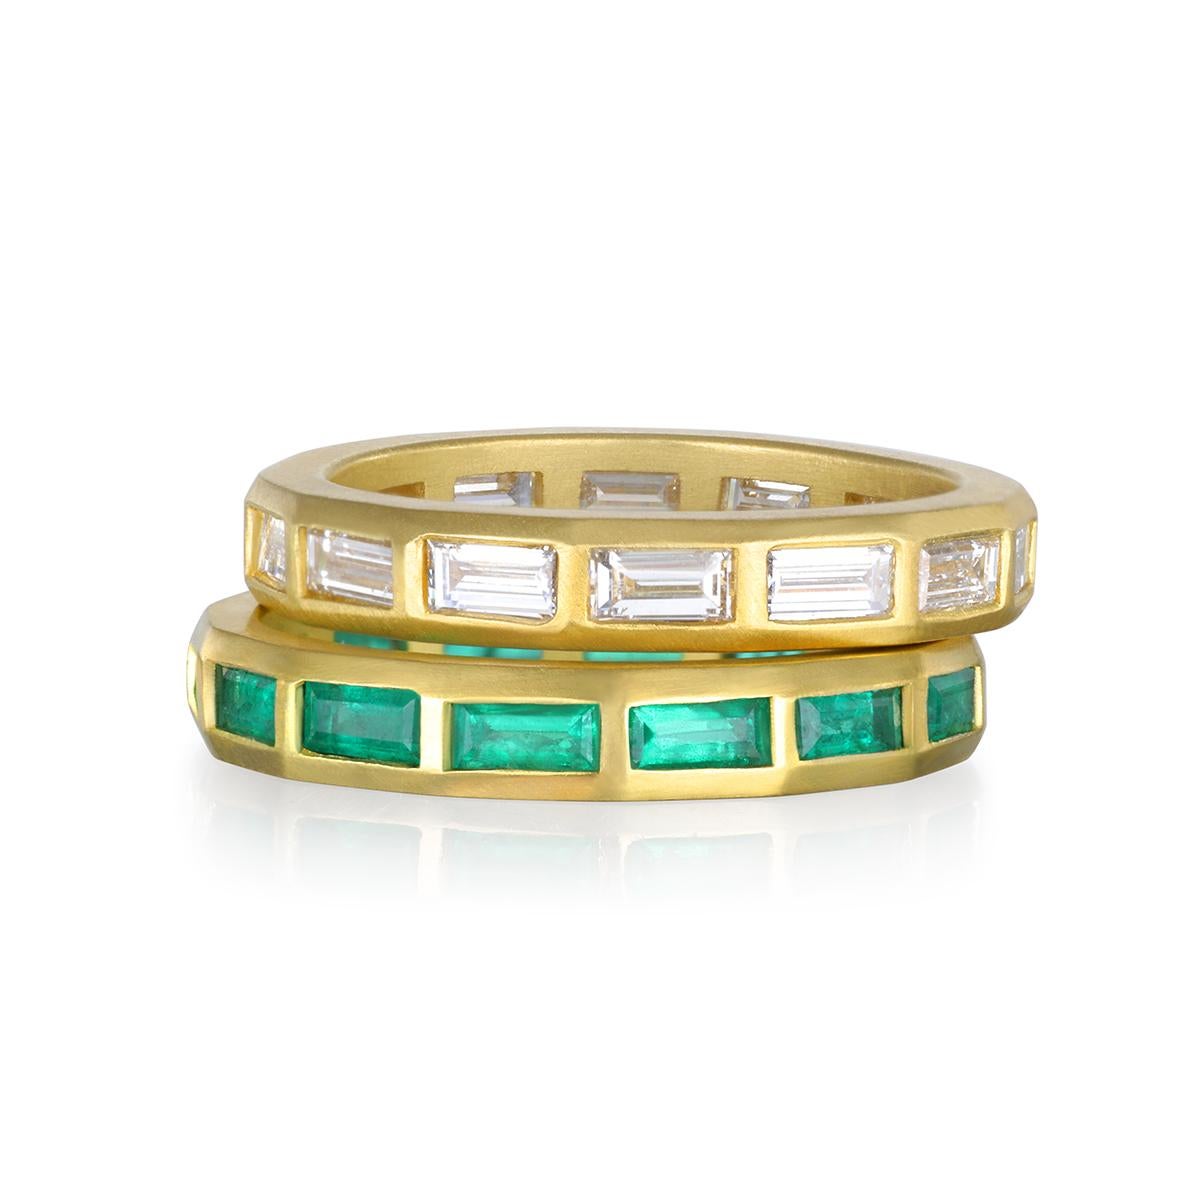 Le bracelet éternel en or 18 carats Baguette d'émeraude de Faye Kim est une version propre, fraîche et moderne du bracelet éternel en diamant. Il est parfait pour être empilé avec d'autres bagues et permet de nombreuses façons de le porter et de